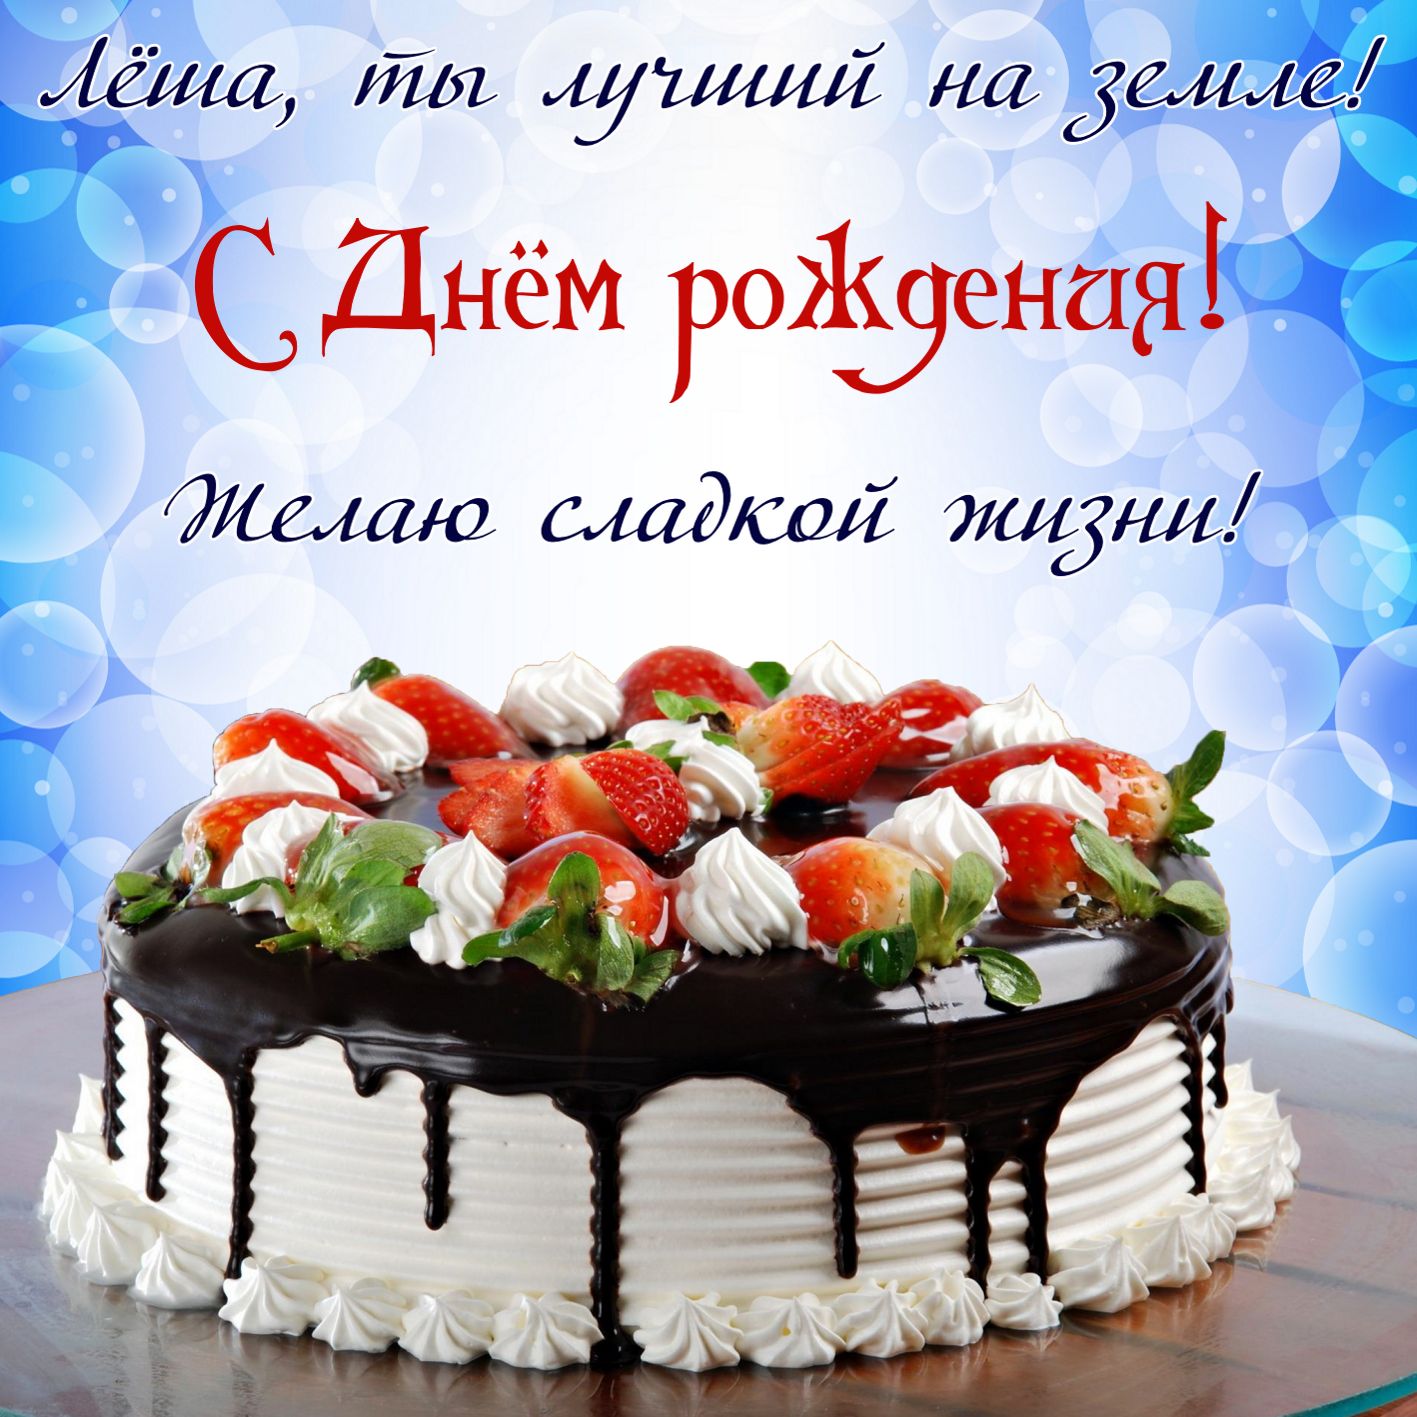 Открытка на День рождения Лёше - красивый большой торт на ярком фоне